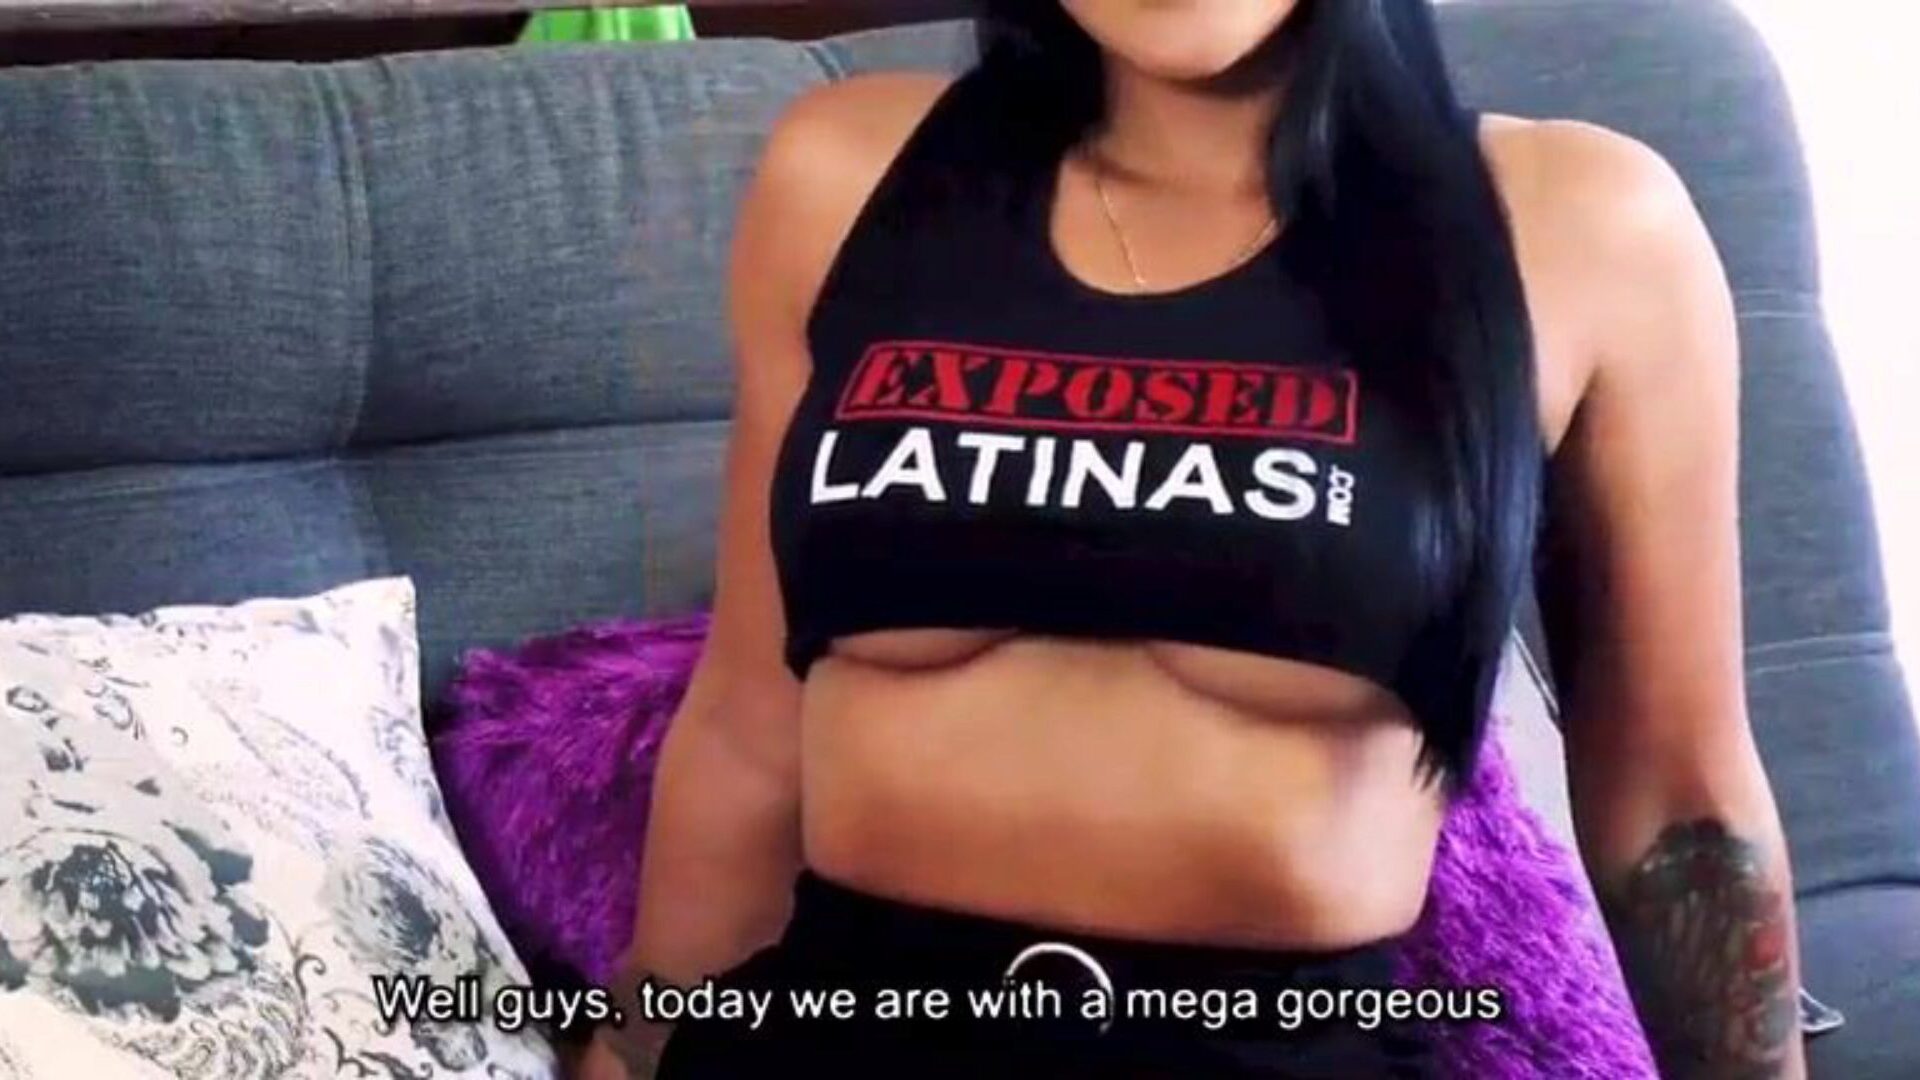 Az explatlatinas.com mariana martix hot casting videója Kolumbiában készült